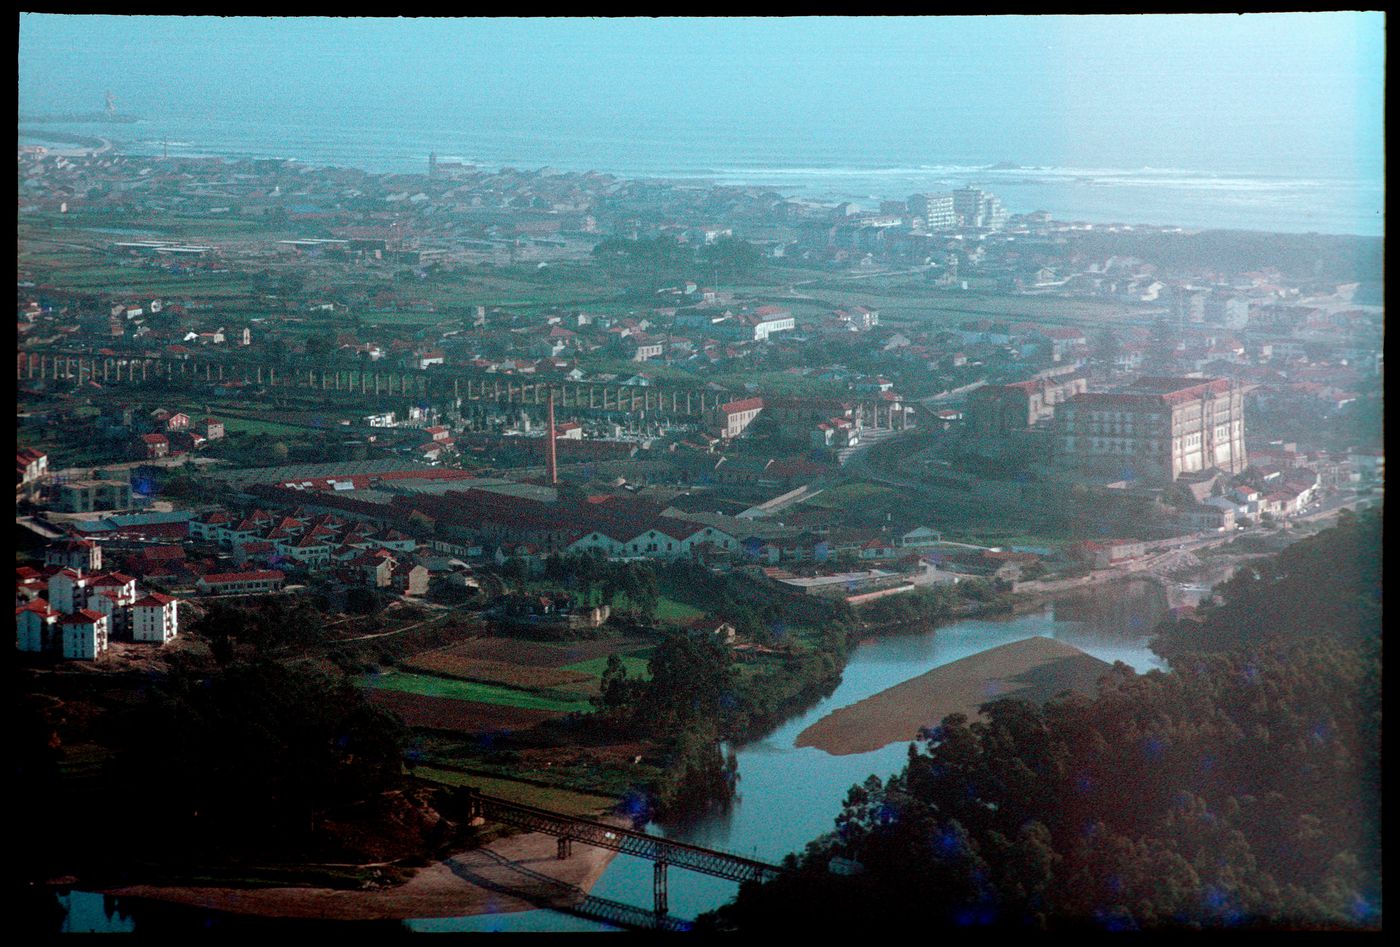 Aerial view of Vila do Conde, Portugal